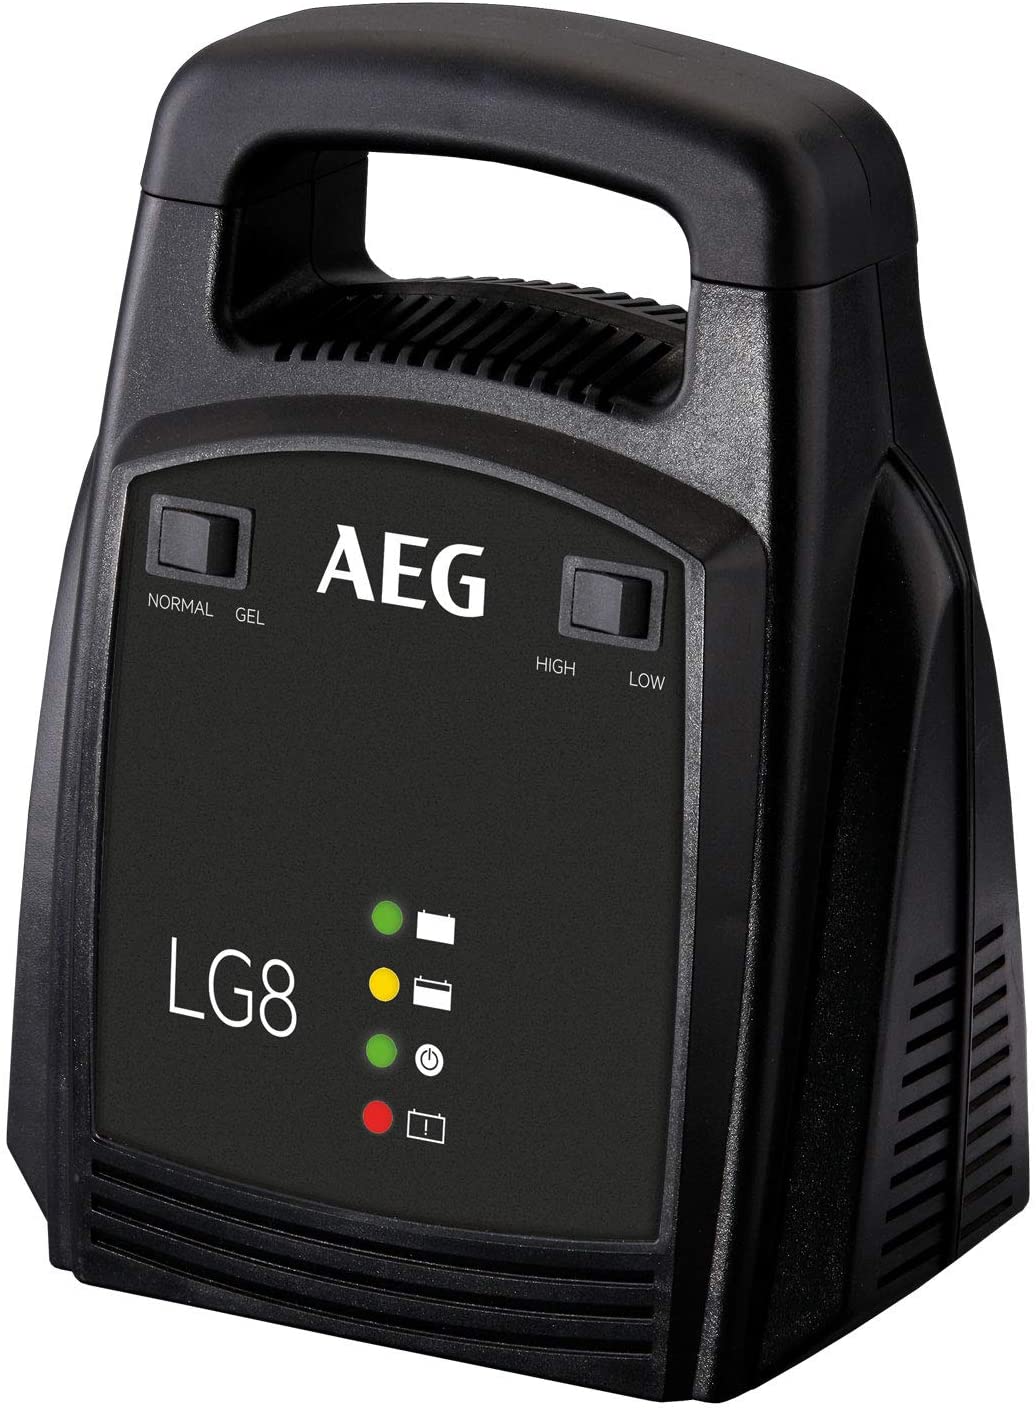 AEG - Nabíječka baterií LG 8, 12 V, 8 A, LED displej + Dárek, servis bez starostí v hodnotě 300Kč